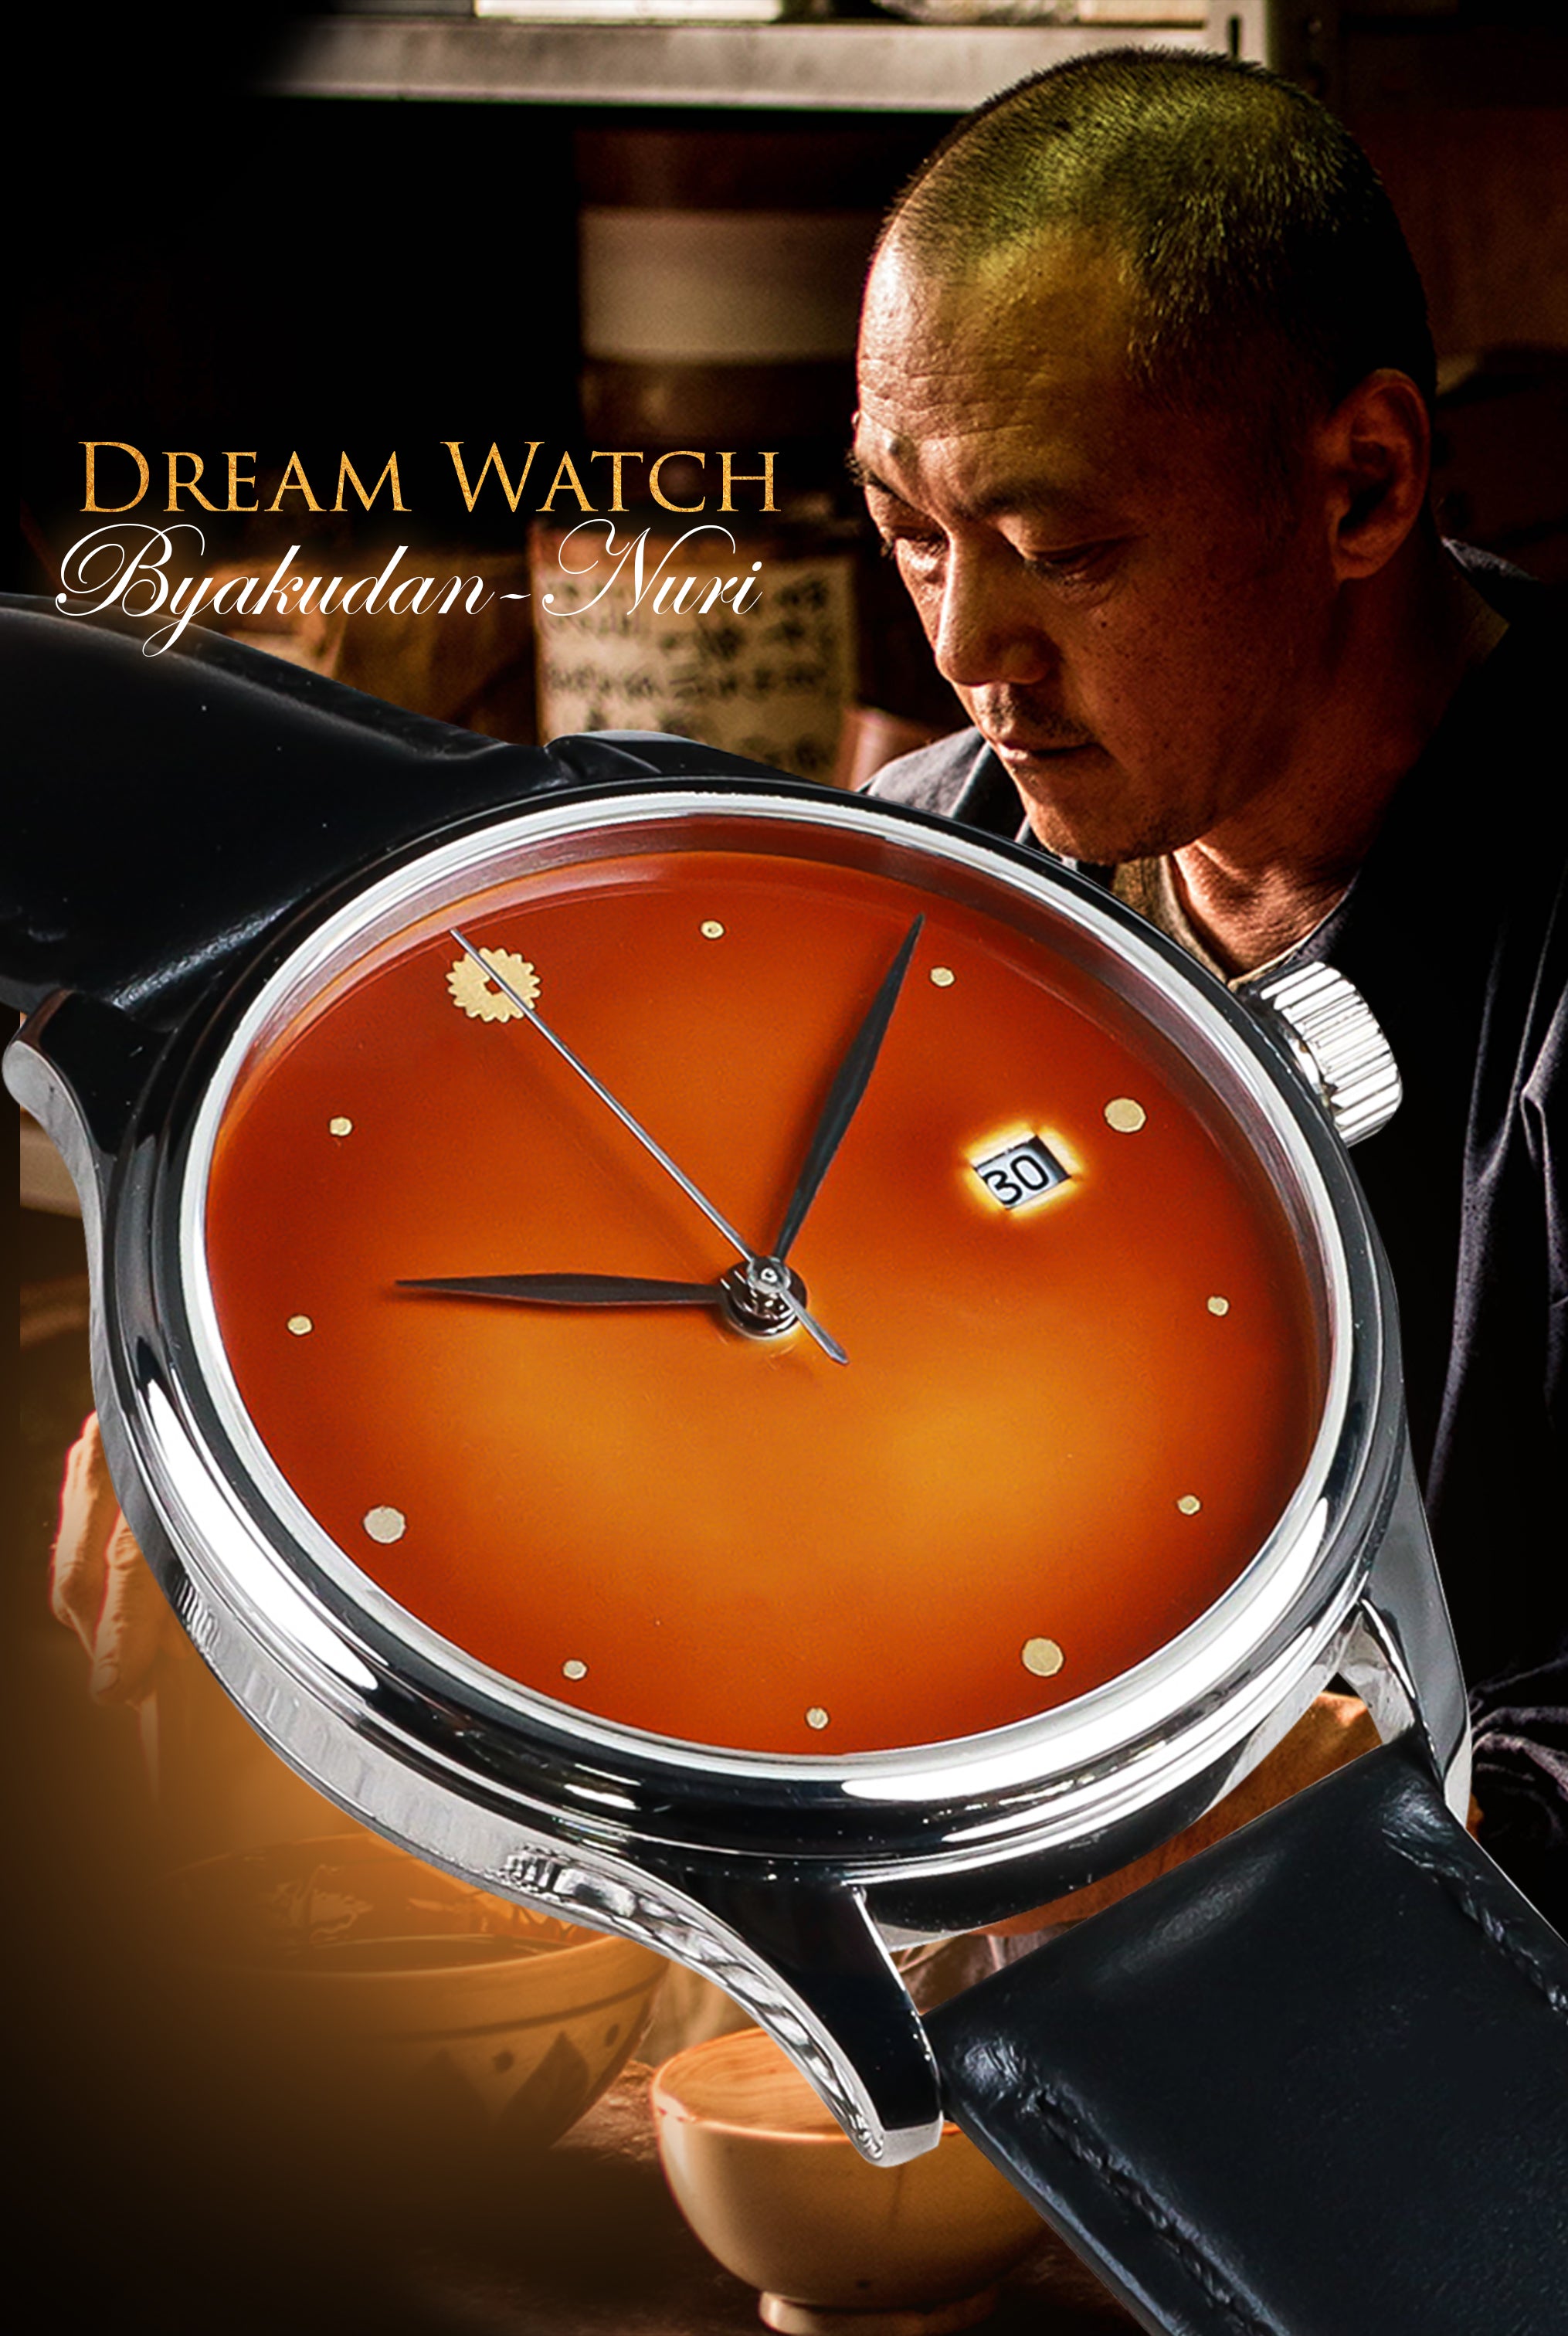 Dream Watch Byakudan Nuri urushi dial watch - Exquisite craftsmanship by Echizen Watch and Wancher Watch